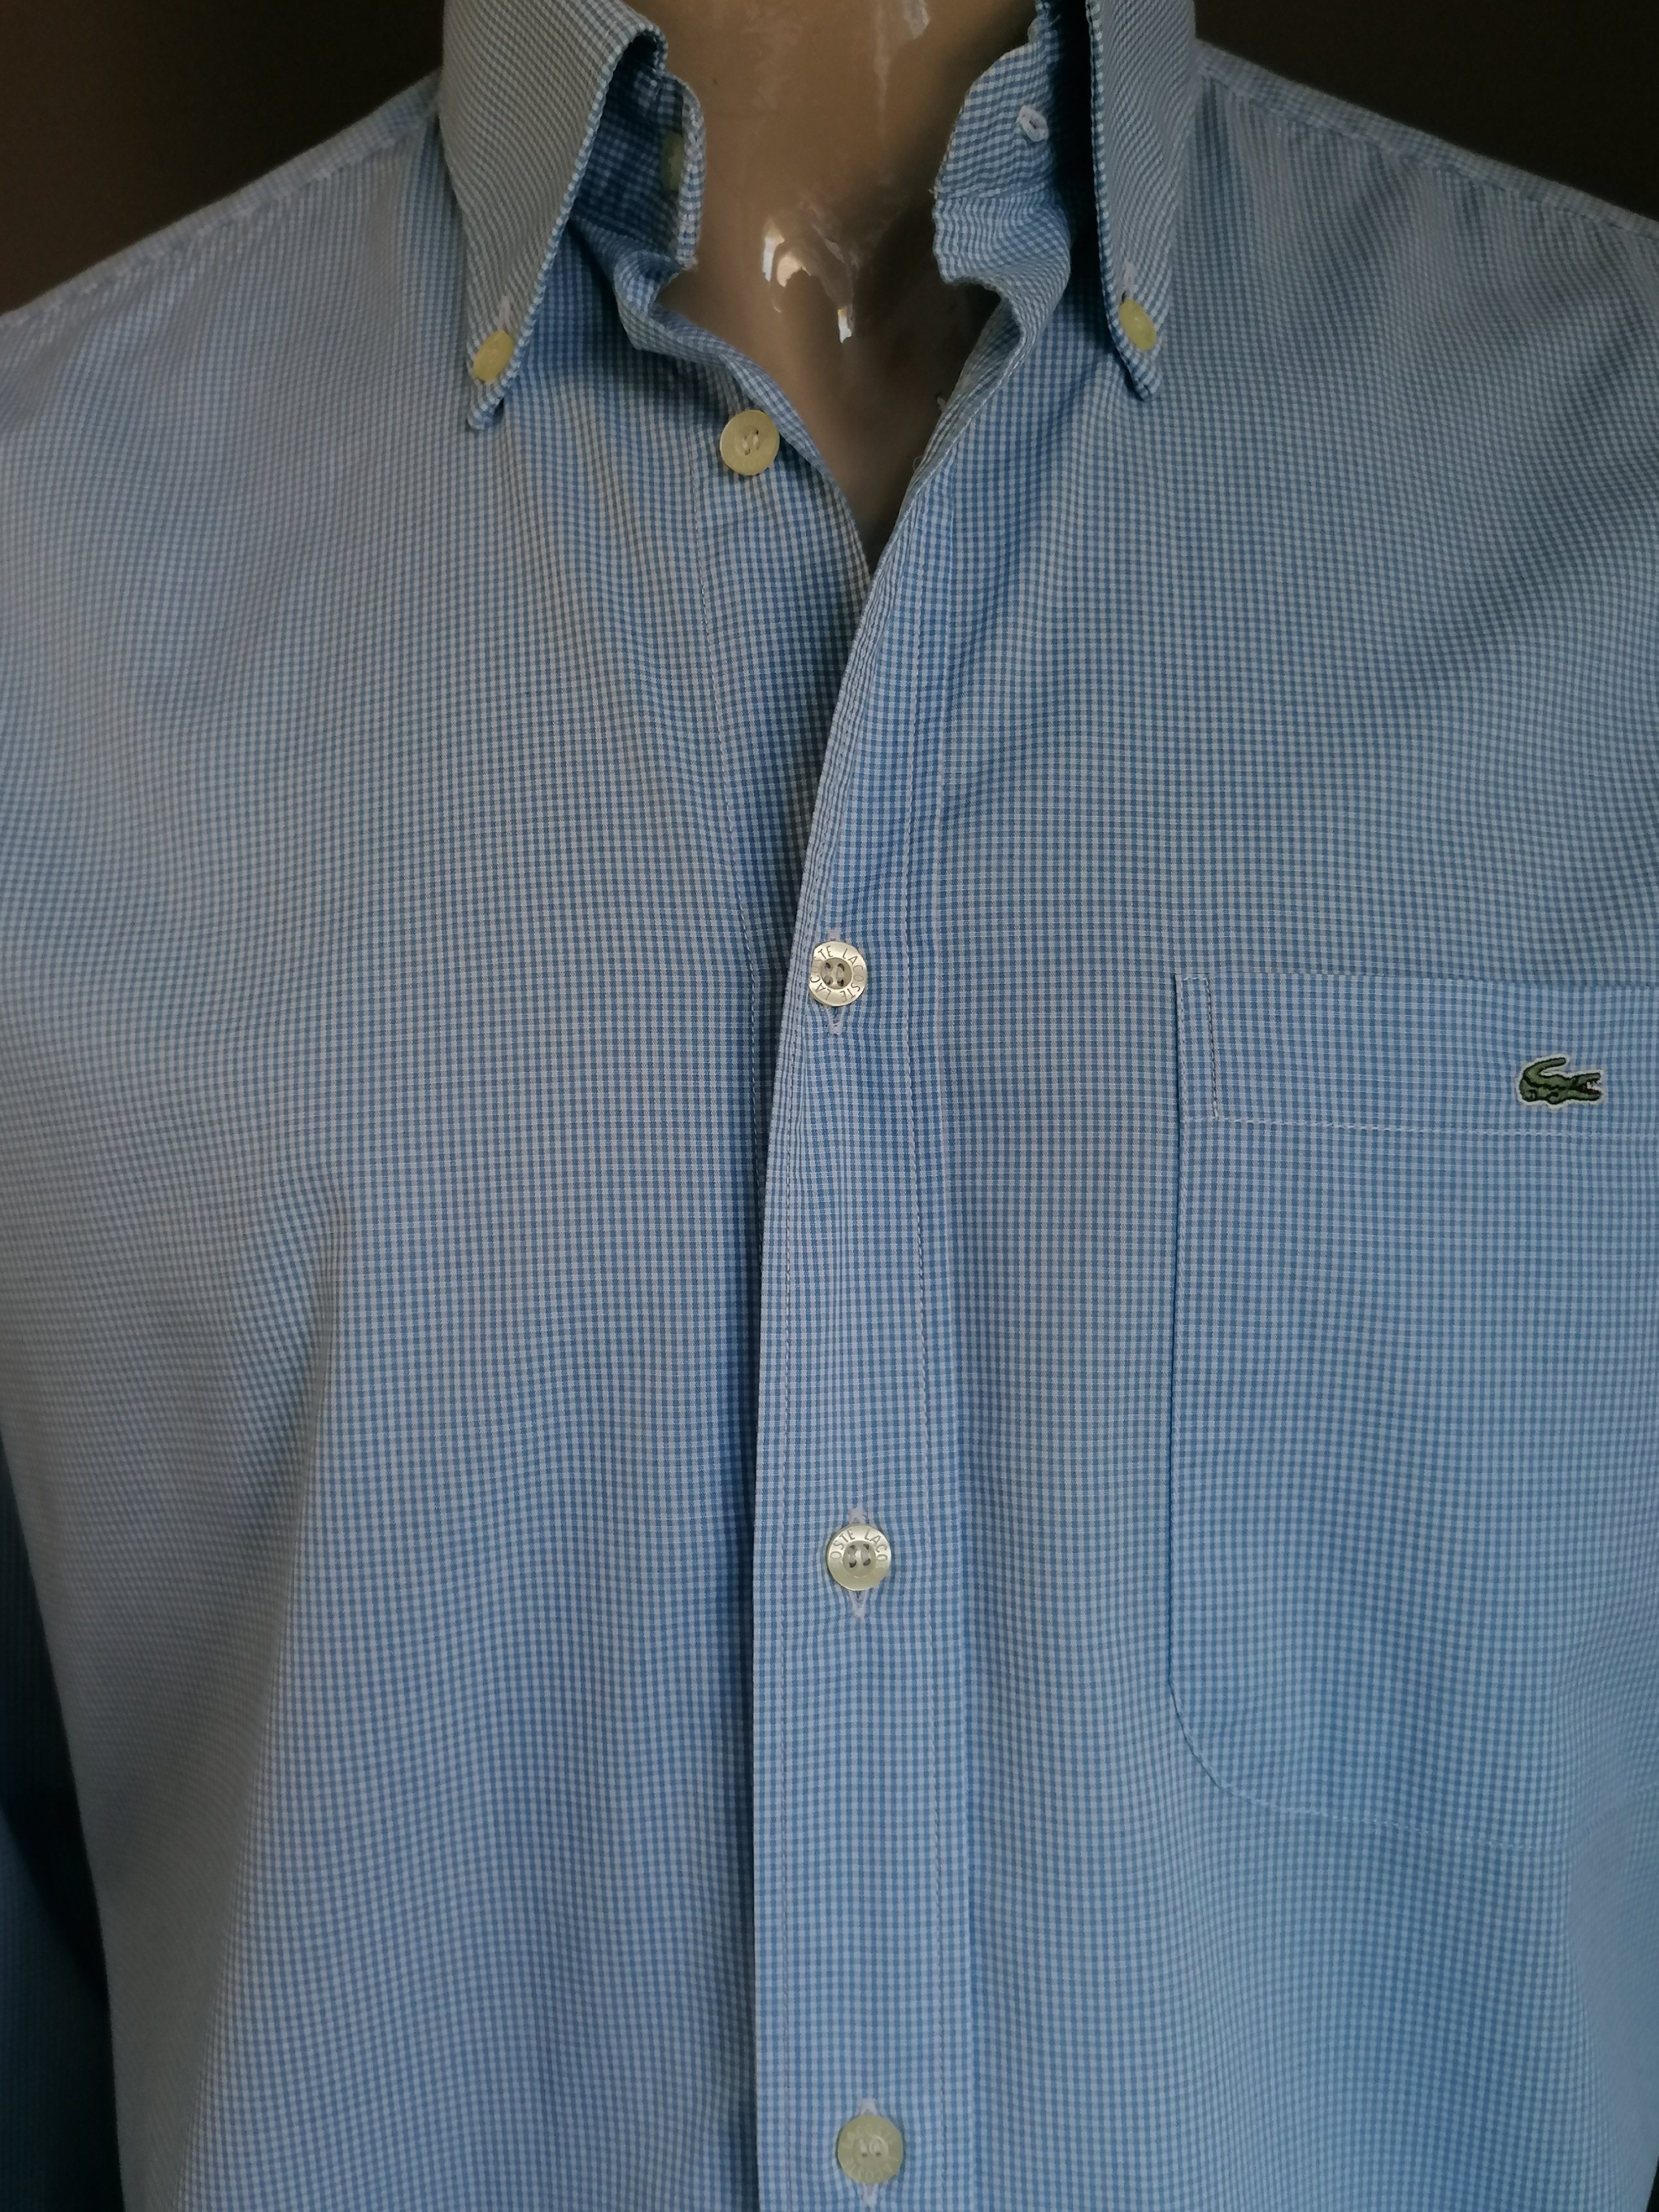 Populair boiler Mompelen Lacoste overhemd. Blauw Wit geblokt motief. Maat 42 / L. | EcoGents